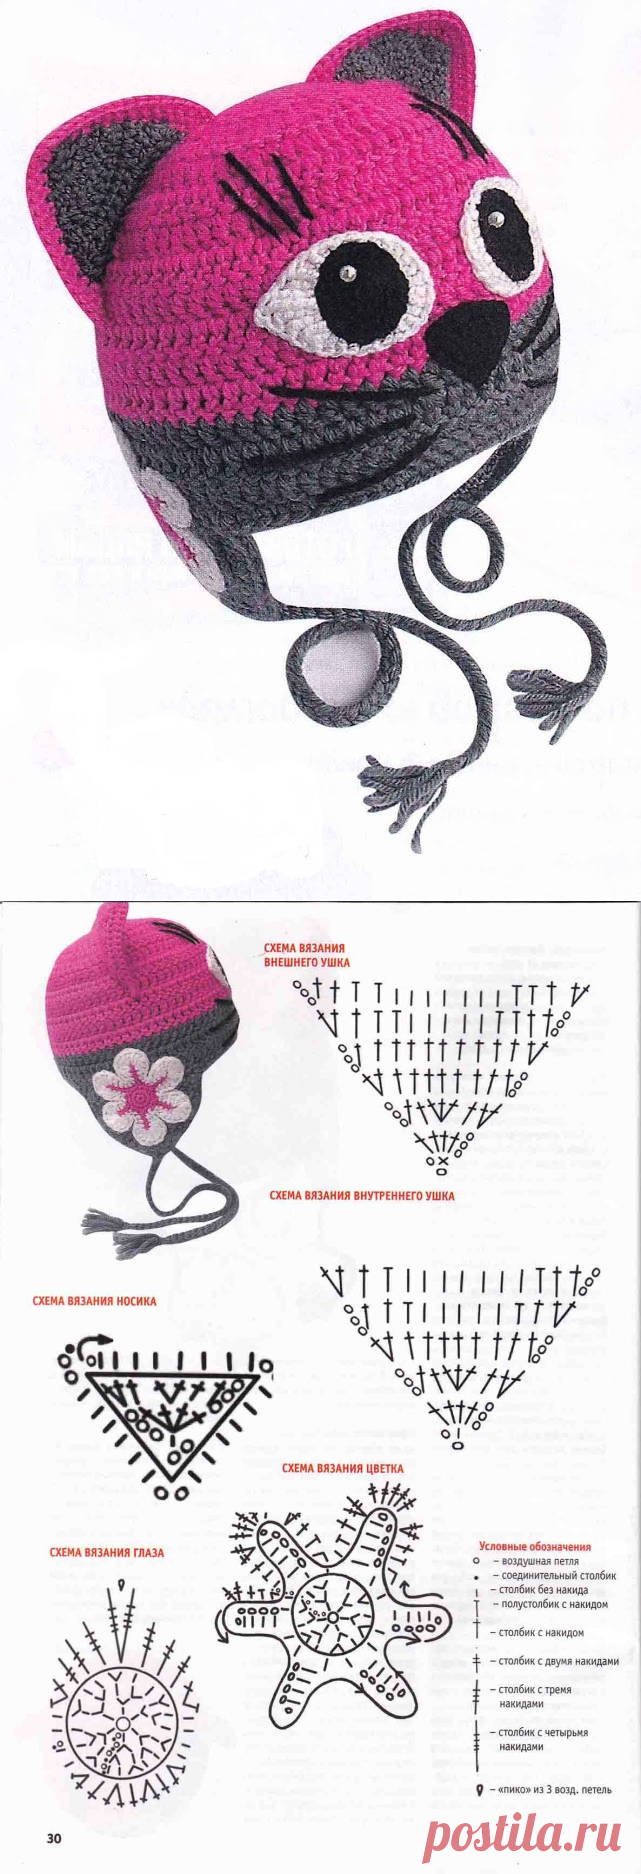 Как связать шапку крючком для мальчика на осень, зиму, весну? шапка для мальчика крючком с шарфом, бини, пилота: схема